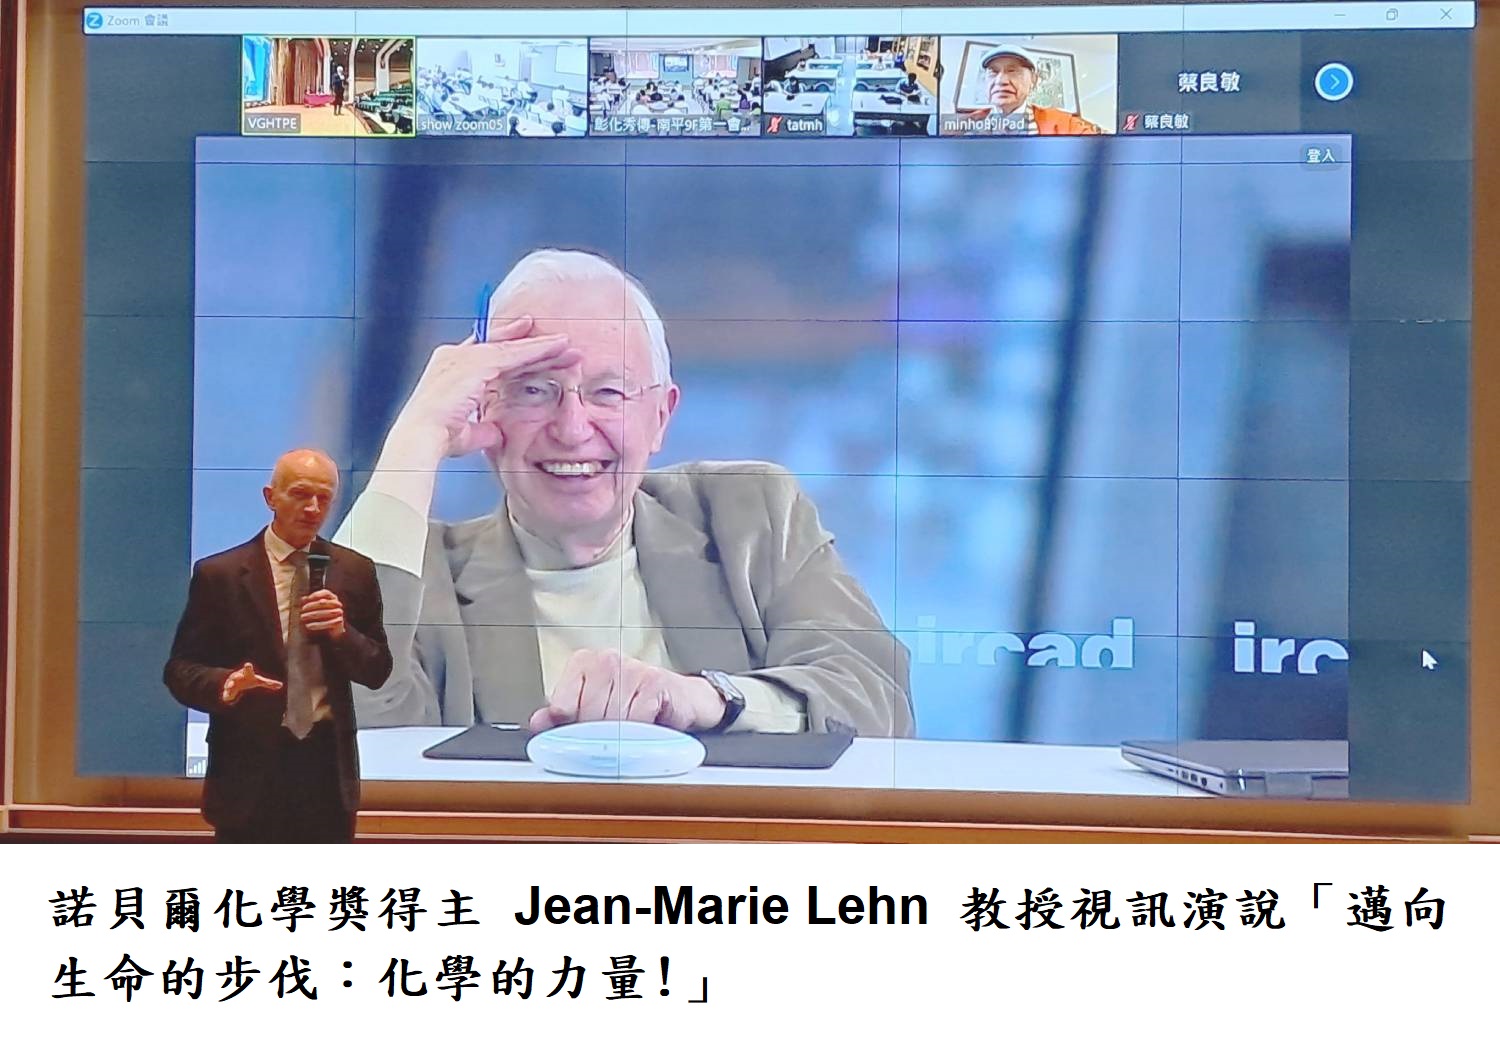 諾貝爾化學獎得主Jean-Marie Lehn 教授視訊演說「邁向生命的步伐：化學的力量!」